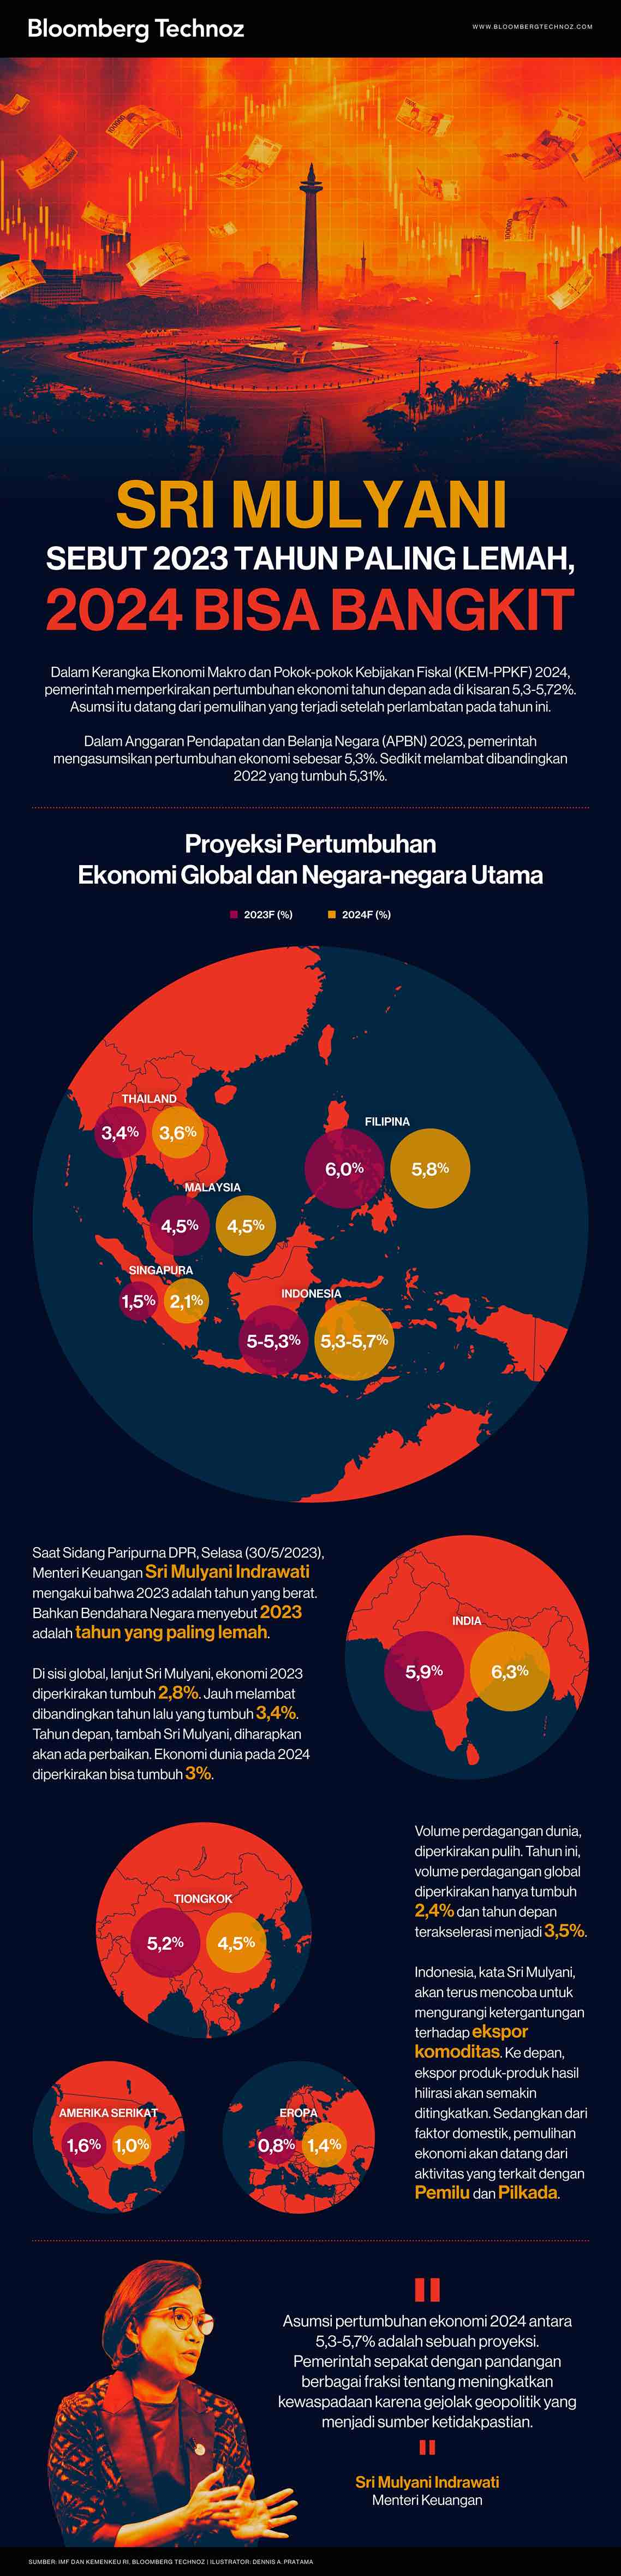 Sri Mulyani Sebut 2023 Tahun Paling Lemah, 2024 Bisa Bangkit (Infografis/Bloomberg Technoz)